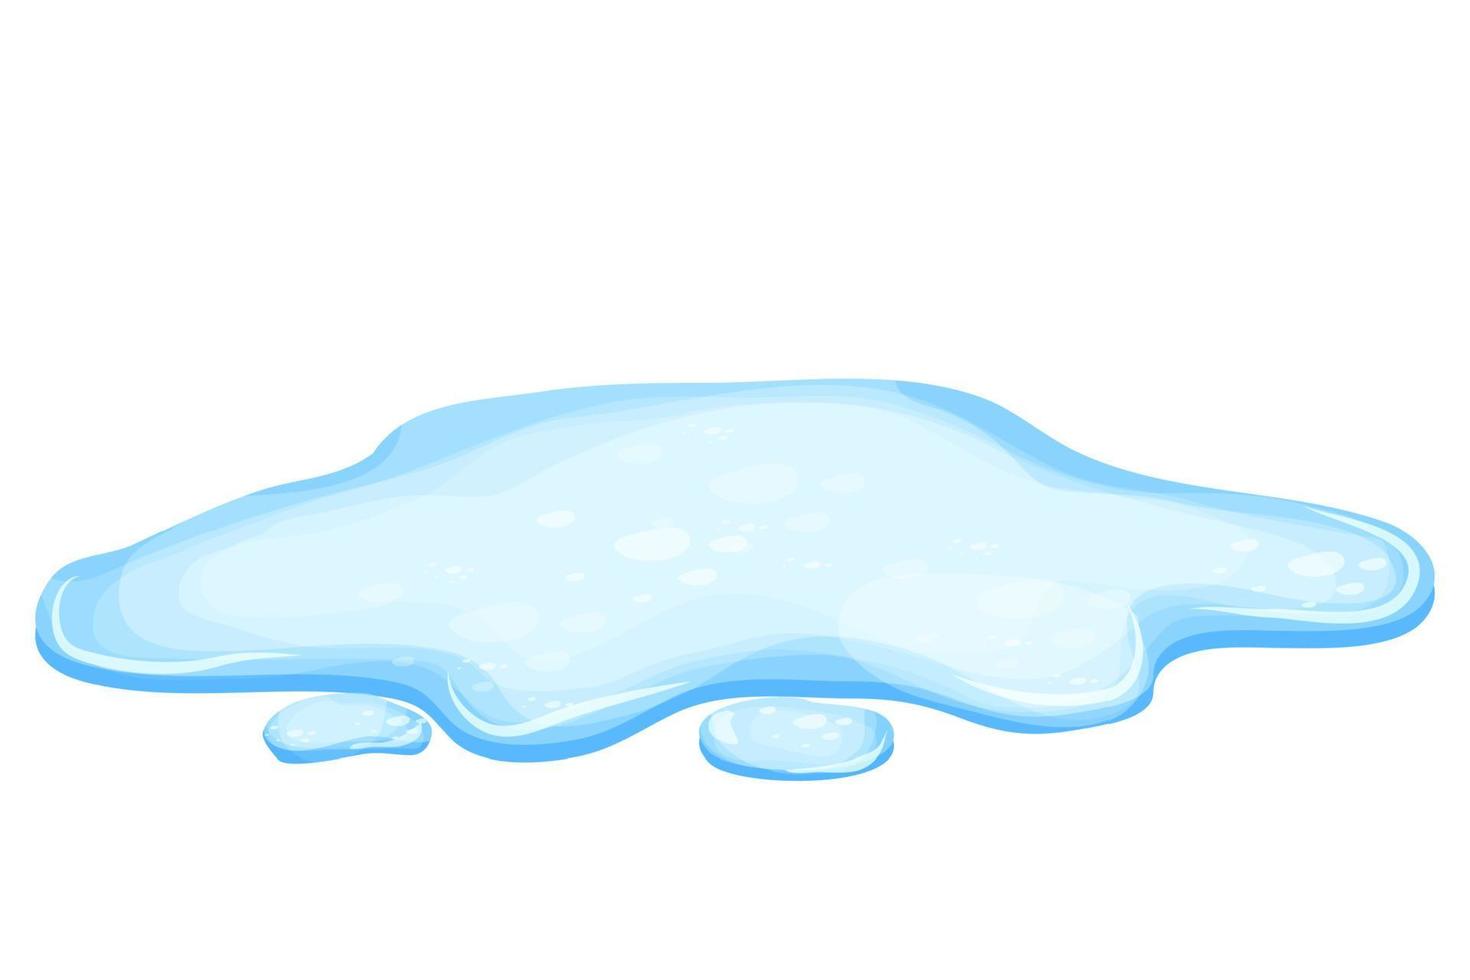 water plas in cartoon stijl geïsoleerd op een witte achtergrond. morsen, meer of vloeistof. ontwerpelement. seizoensobject. vector illustratie